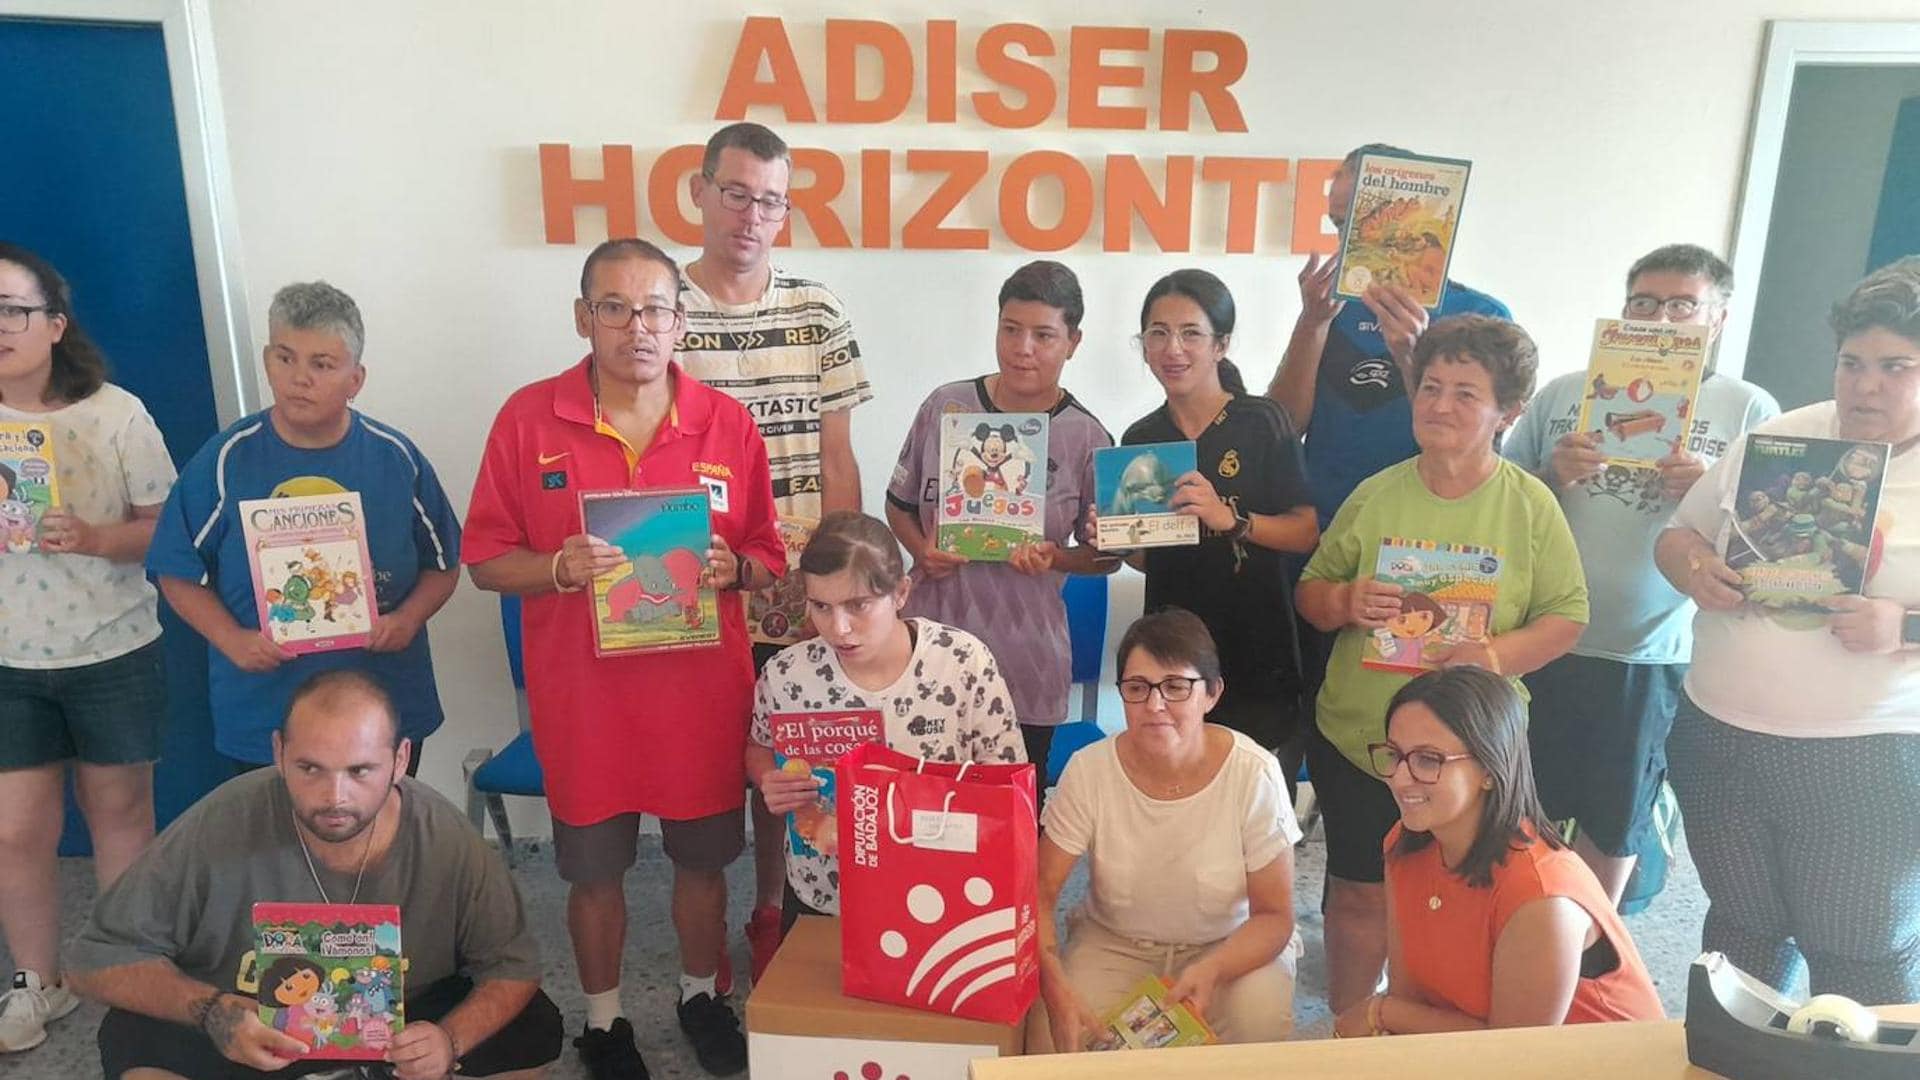 ADISER-Horizontes agradece a la Diputación de Badajoz la donación de libros | Hoy